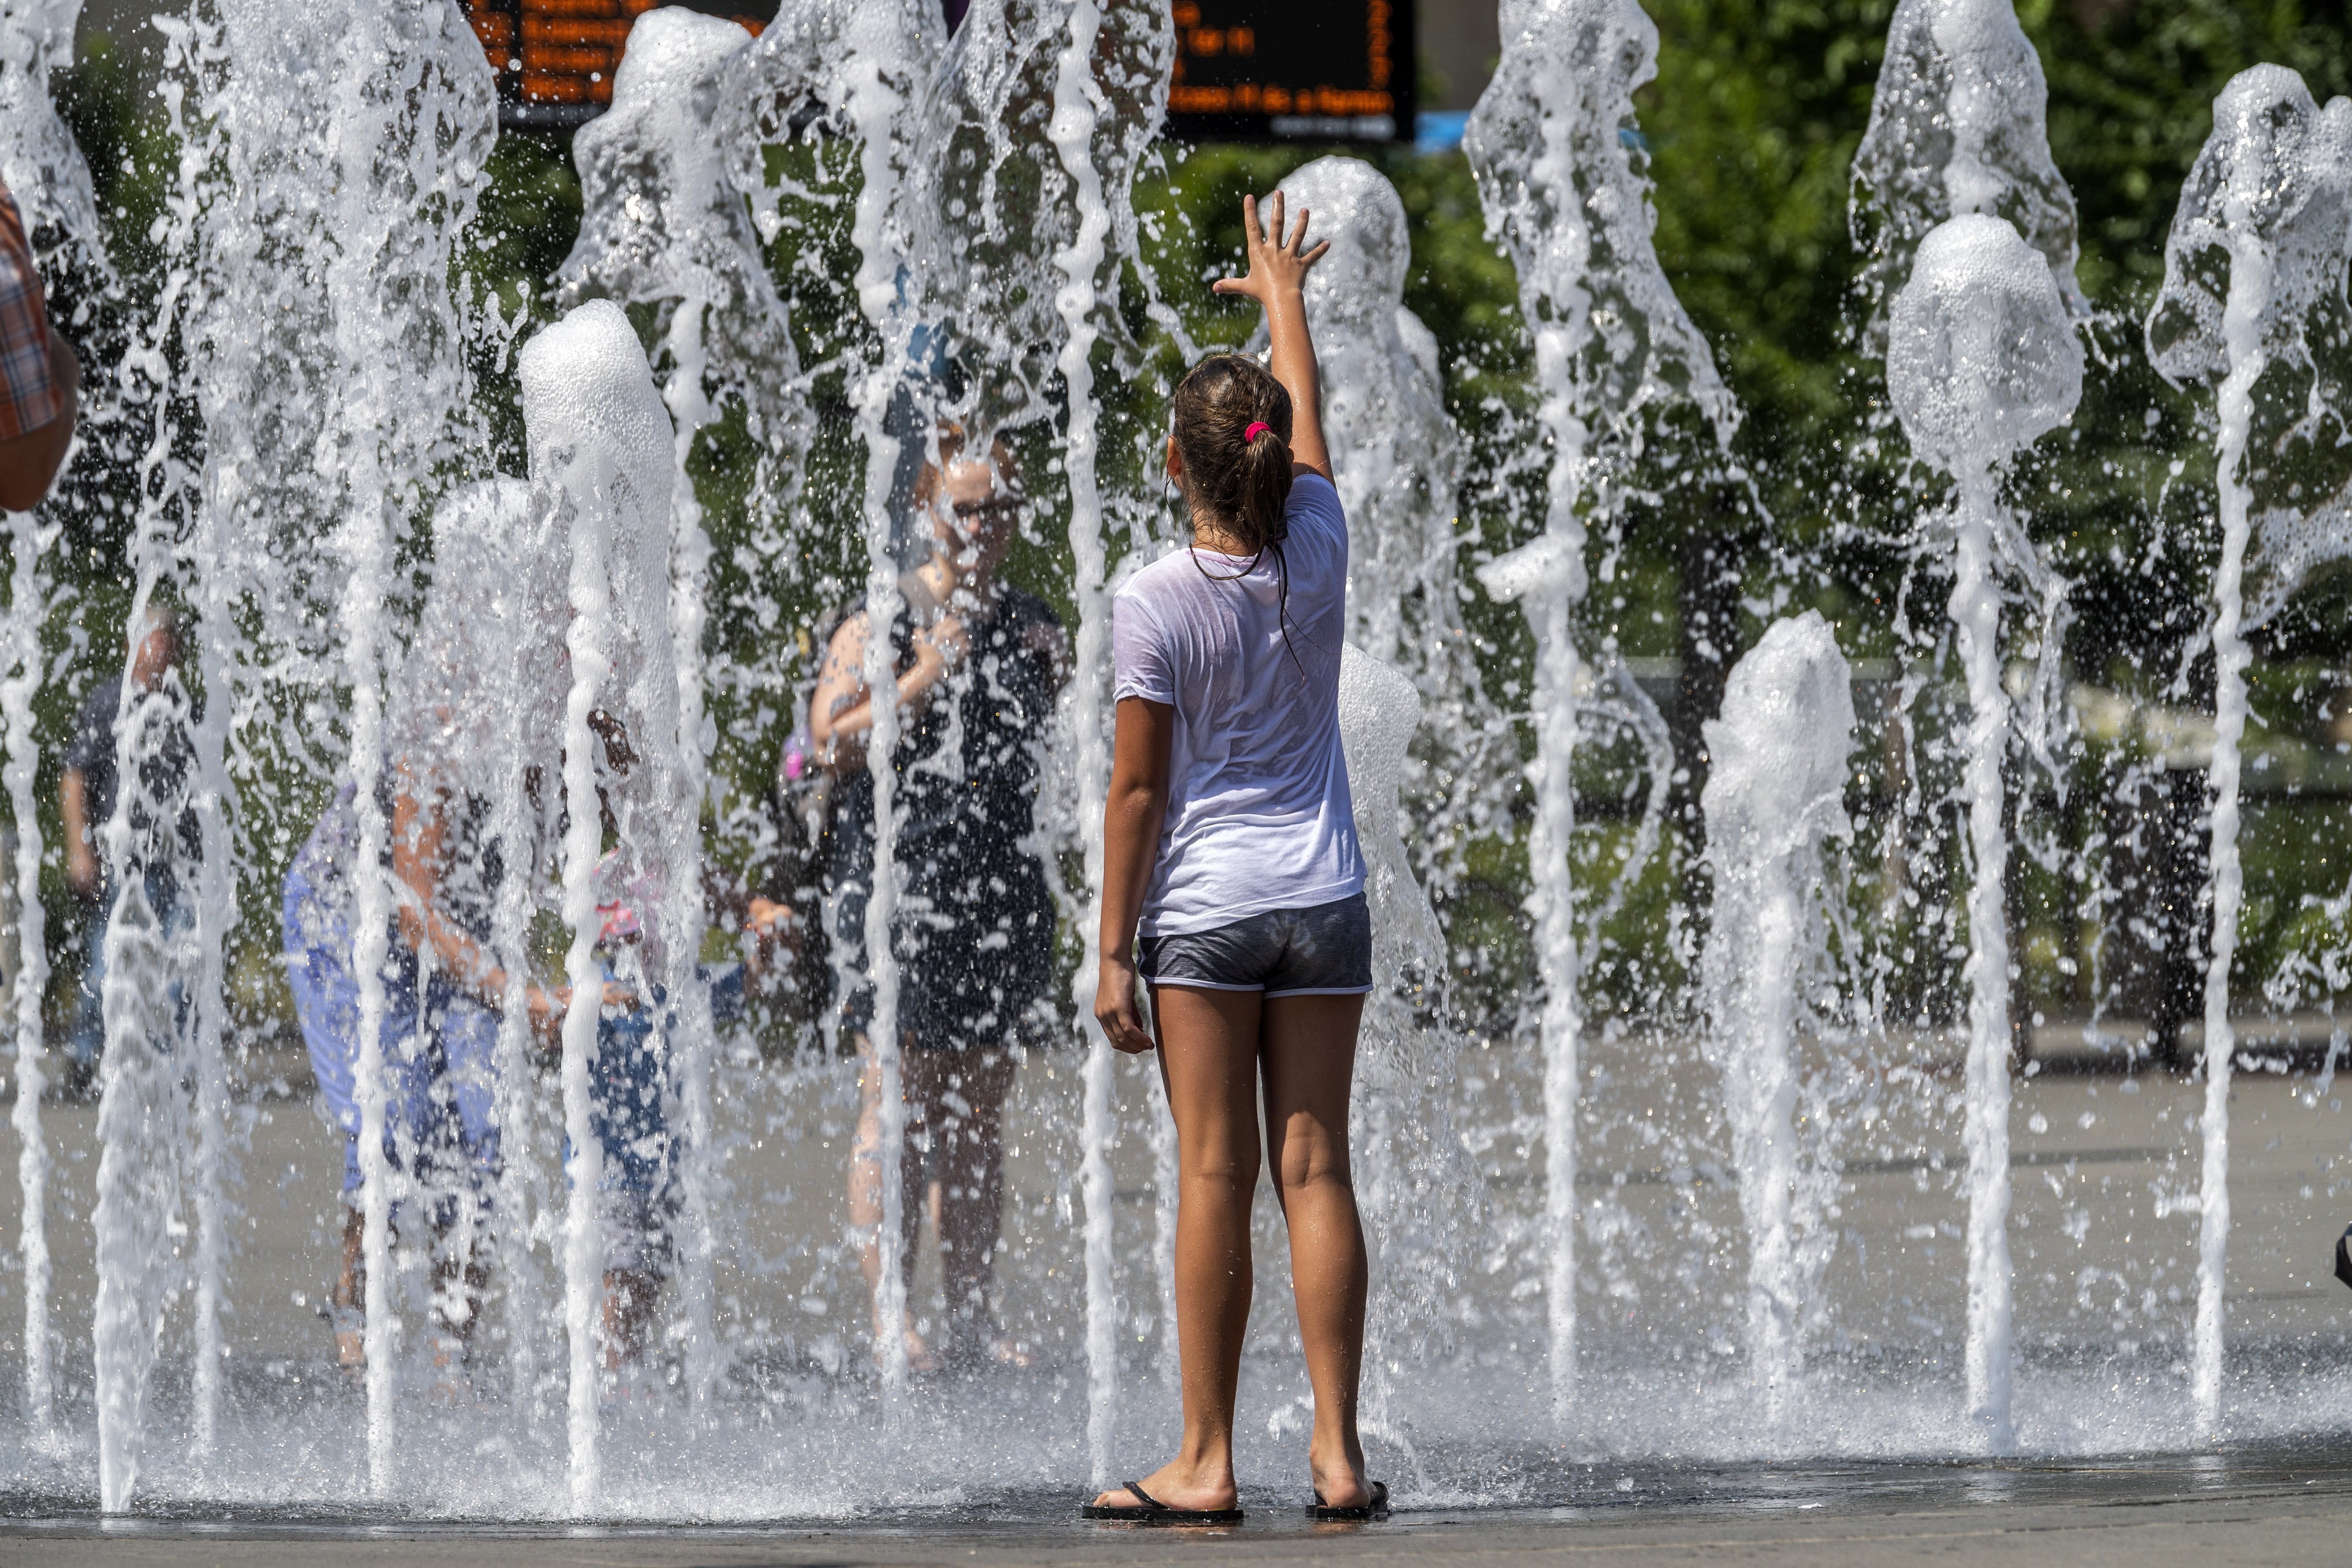 Hőségriadó - Így enyhítik a hőségérzetet a fővárosban